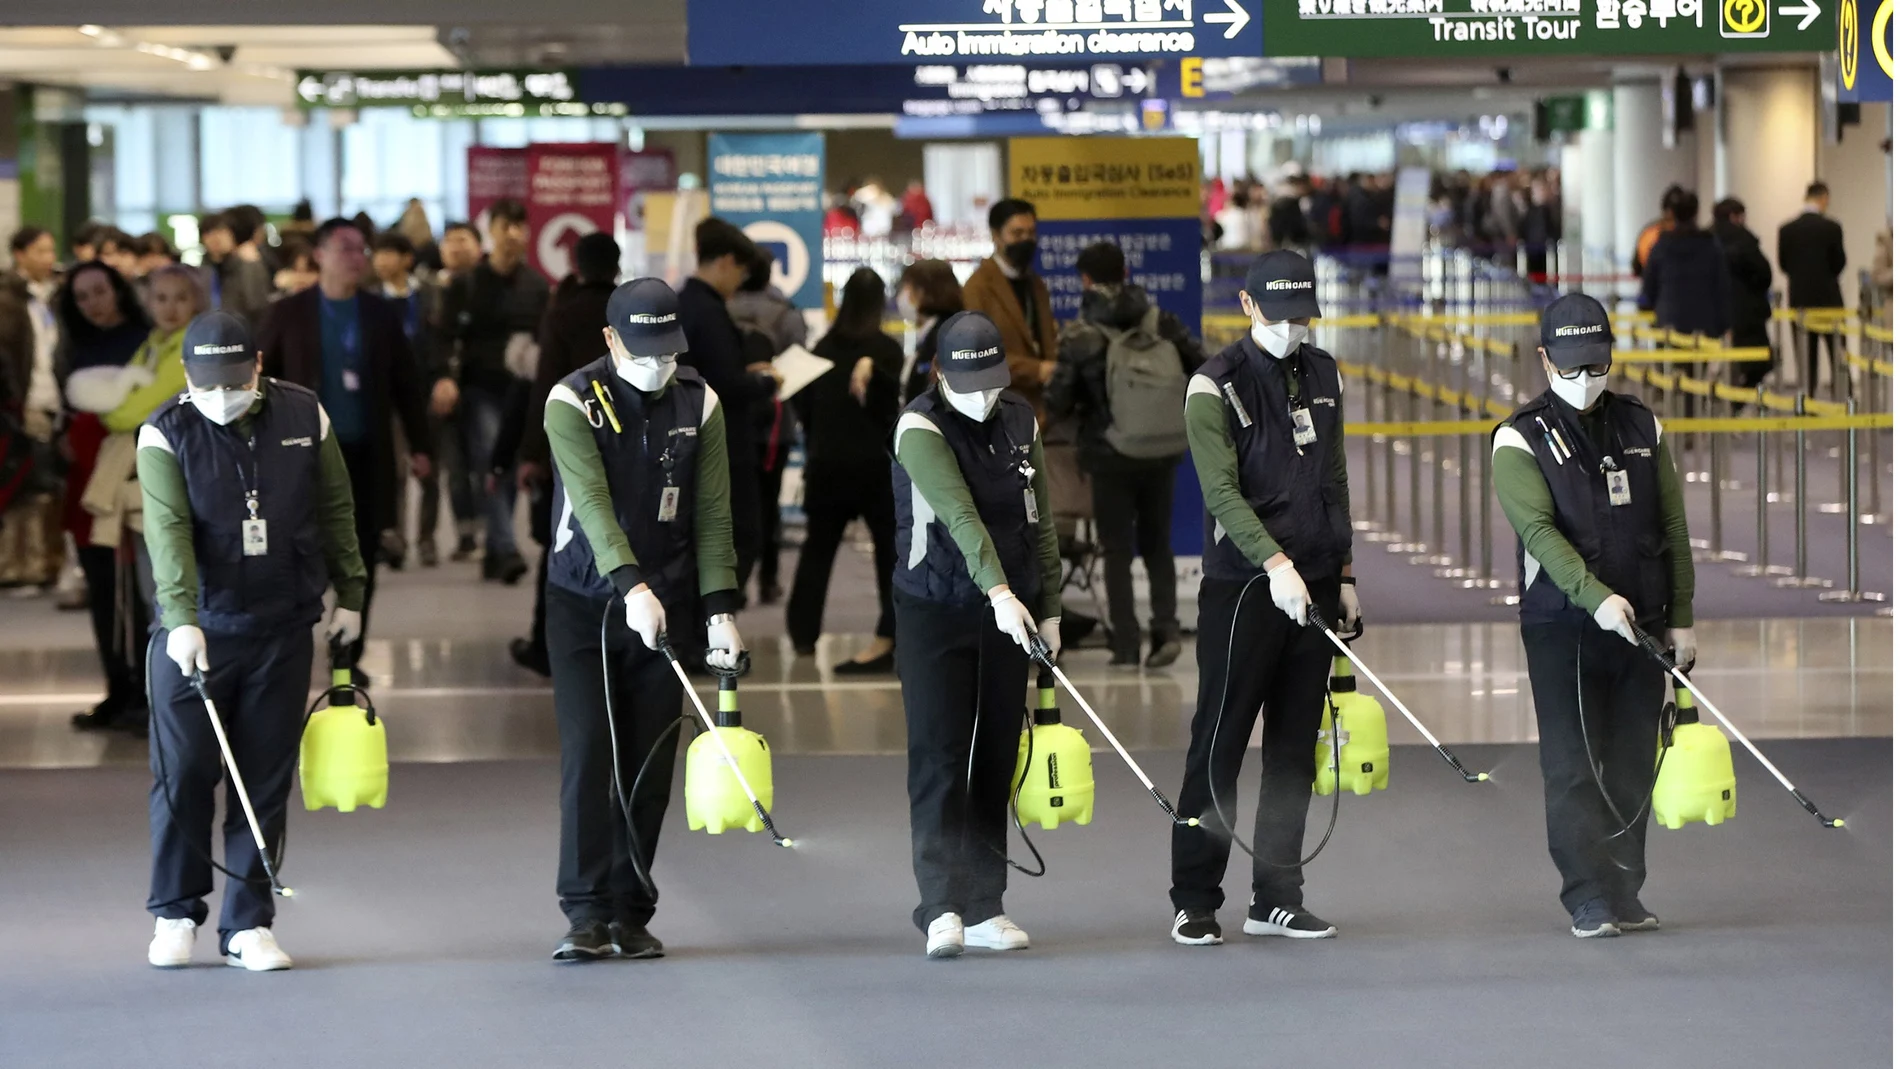 Trabajadores rocían una solución antiséptica en el lobby de llegadas del aeropuerto en medio de la creciente preocupación pública por la posible propagación del nuevo coronavirus. (Suh Myung-geon/Yonhap via AP)